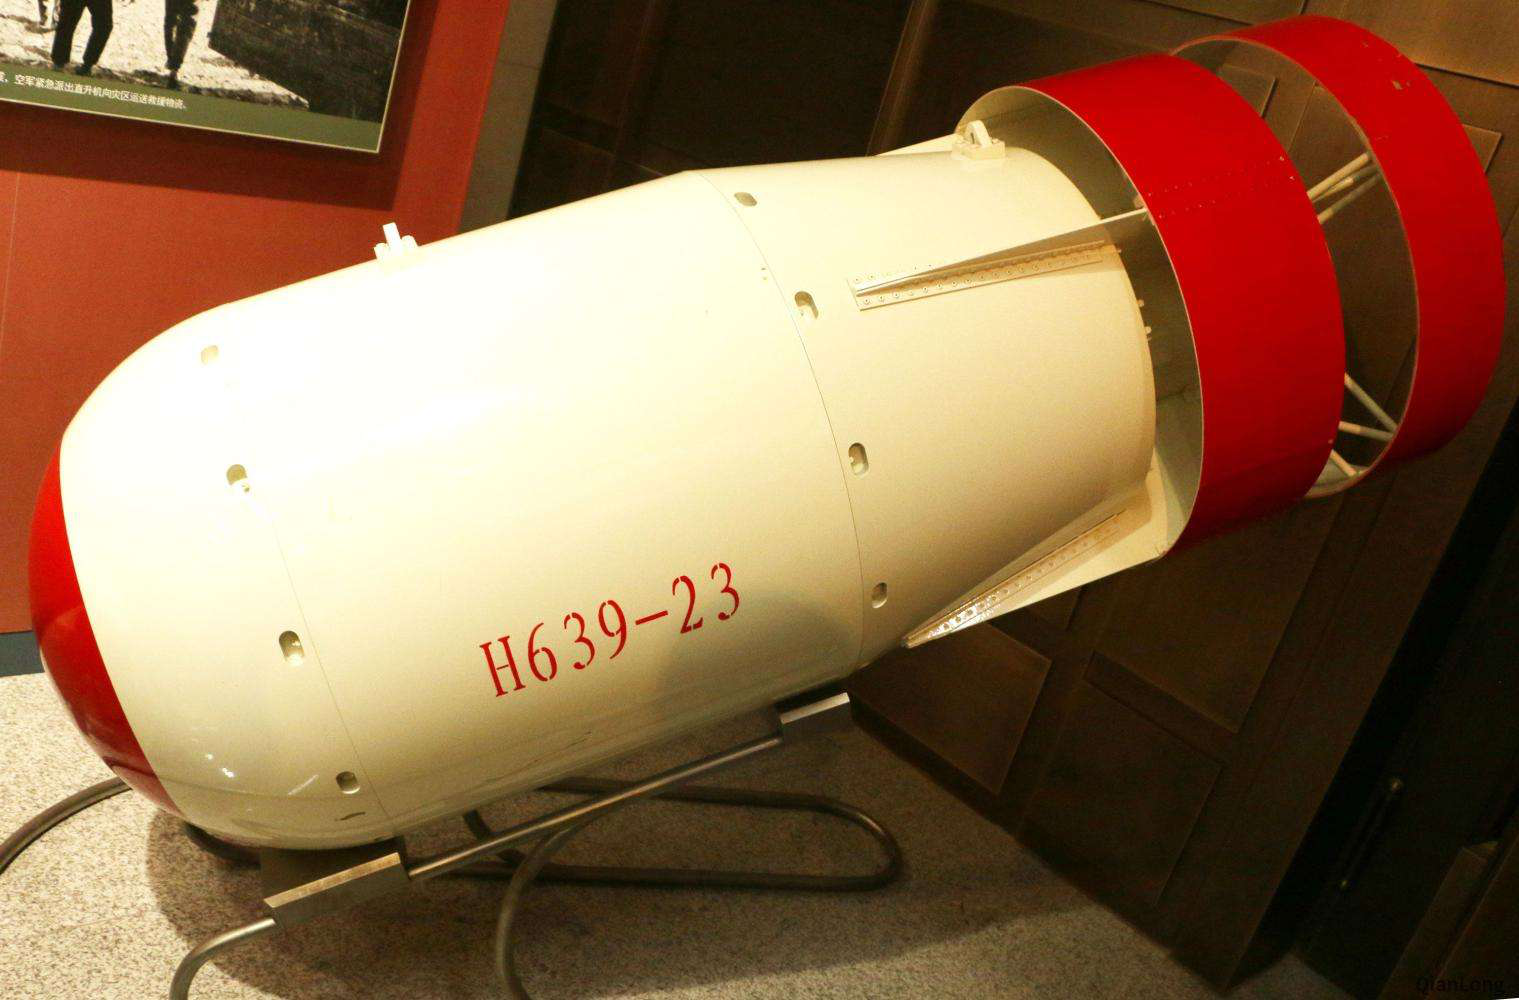 11月1日美国试验1000万吨氢弹成功1952年：今天美国有多少氢弹？ - 知乎